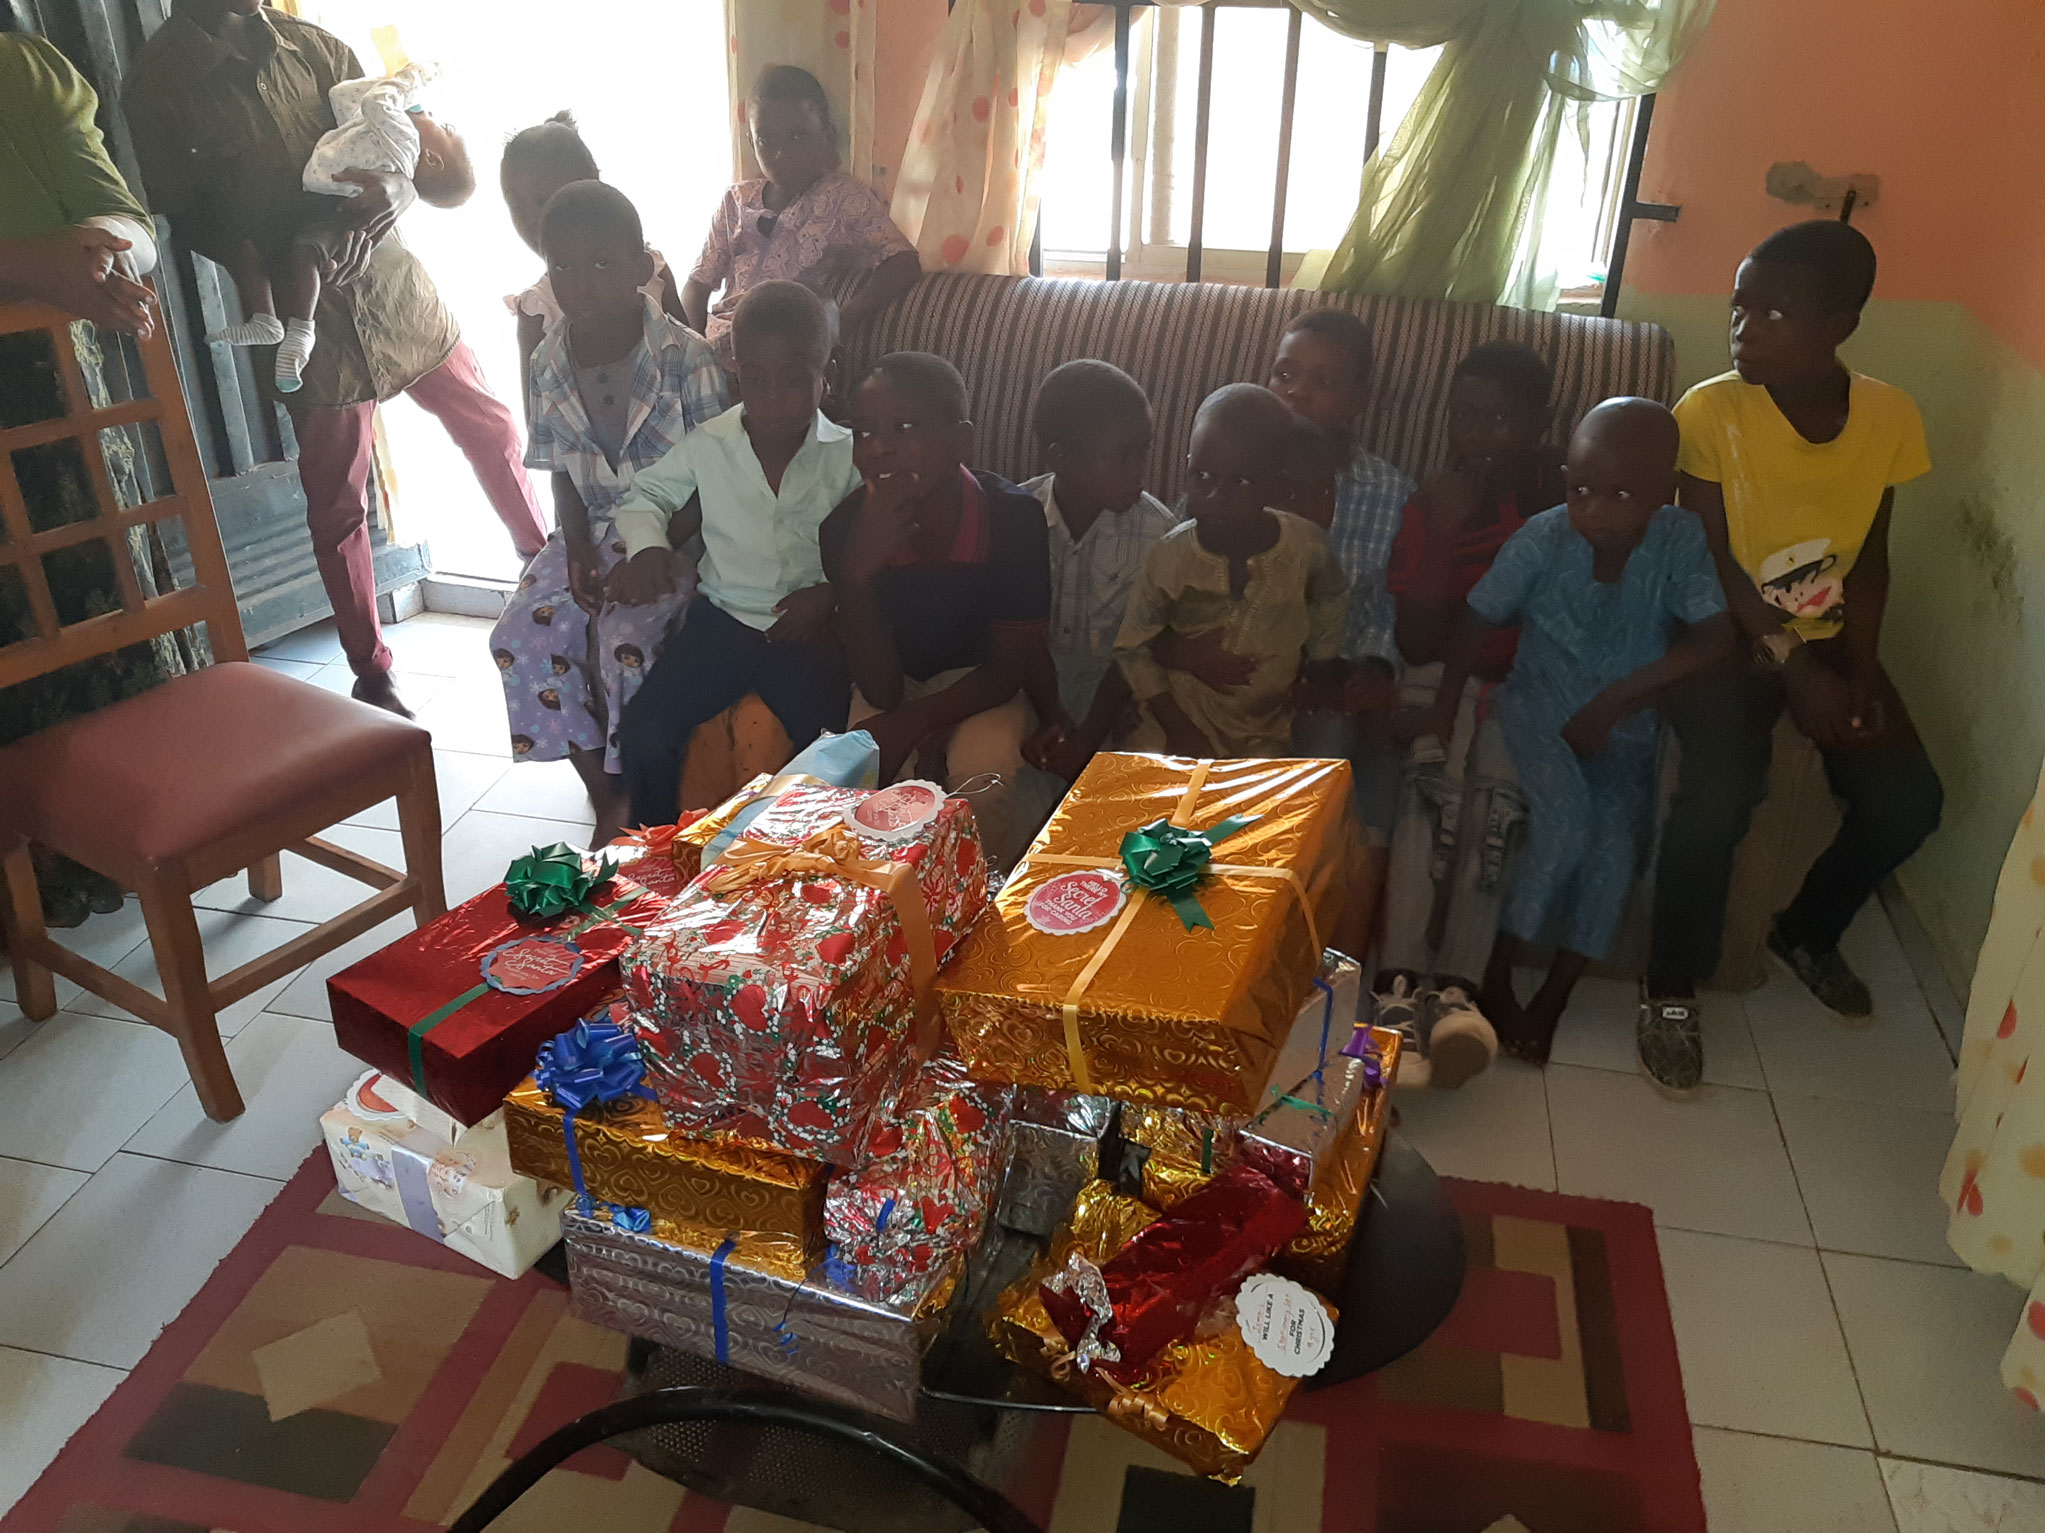 Novare Cares Orphanage Visit